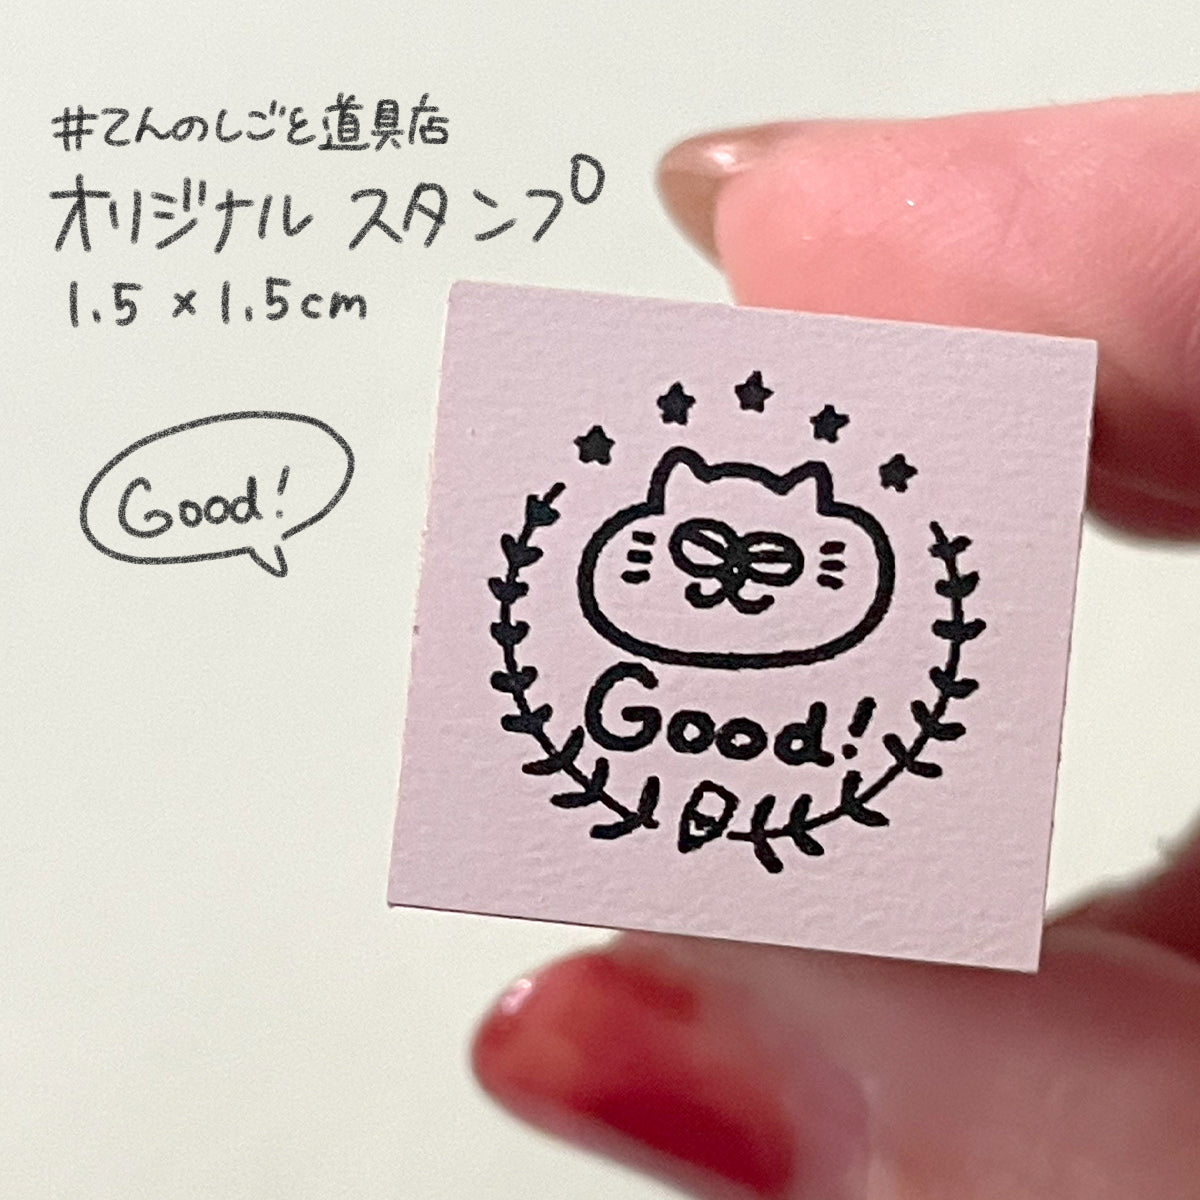 【てんのしごと道具店オリジナル】 「Good!」スタンプ(1.5×1.5cm)